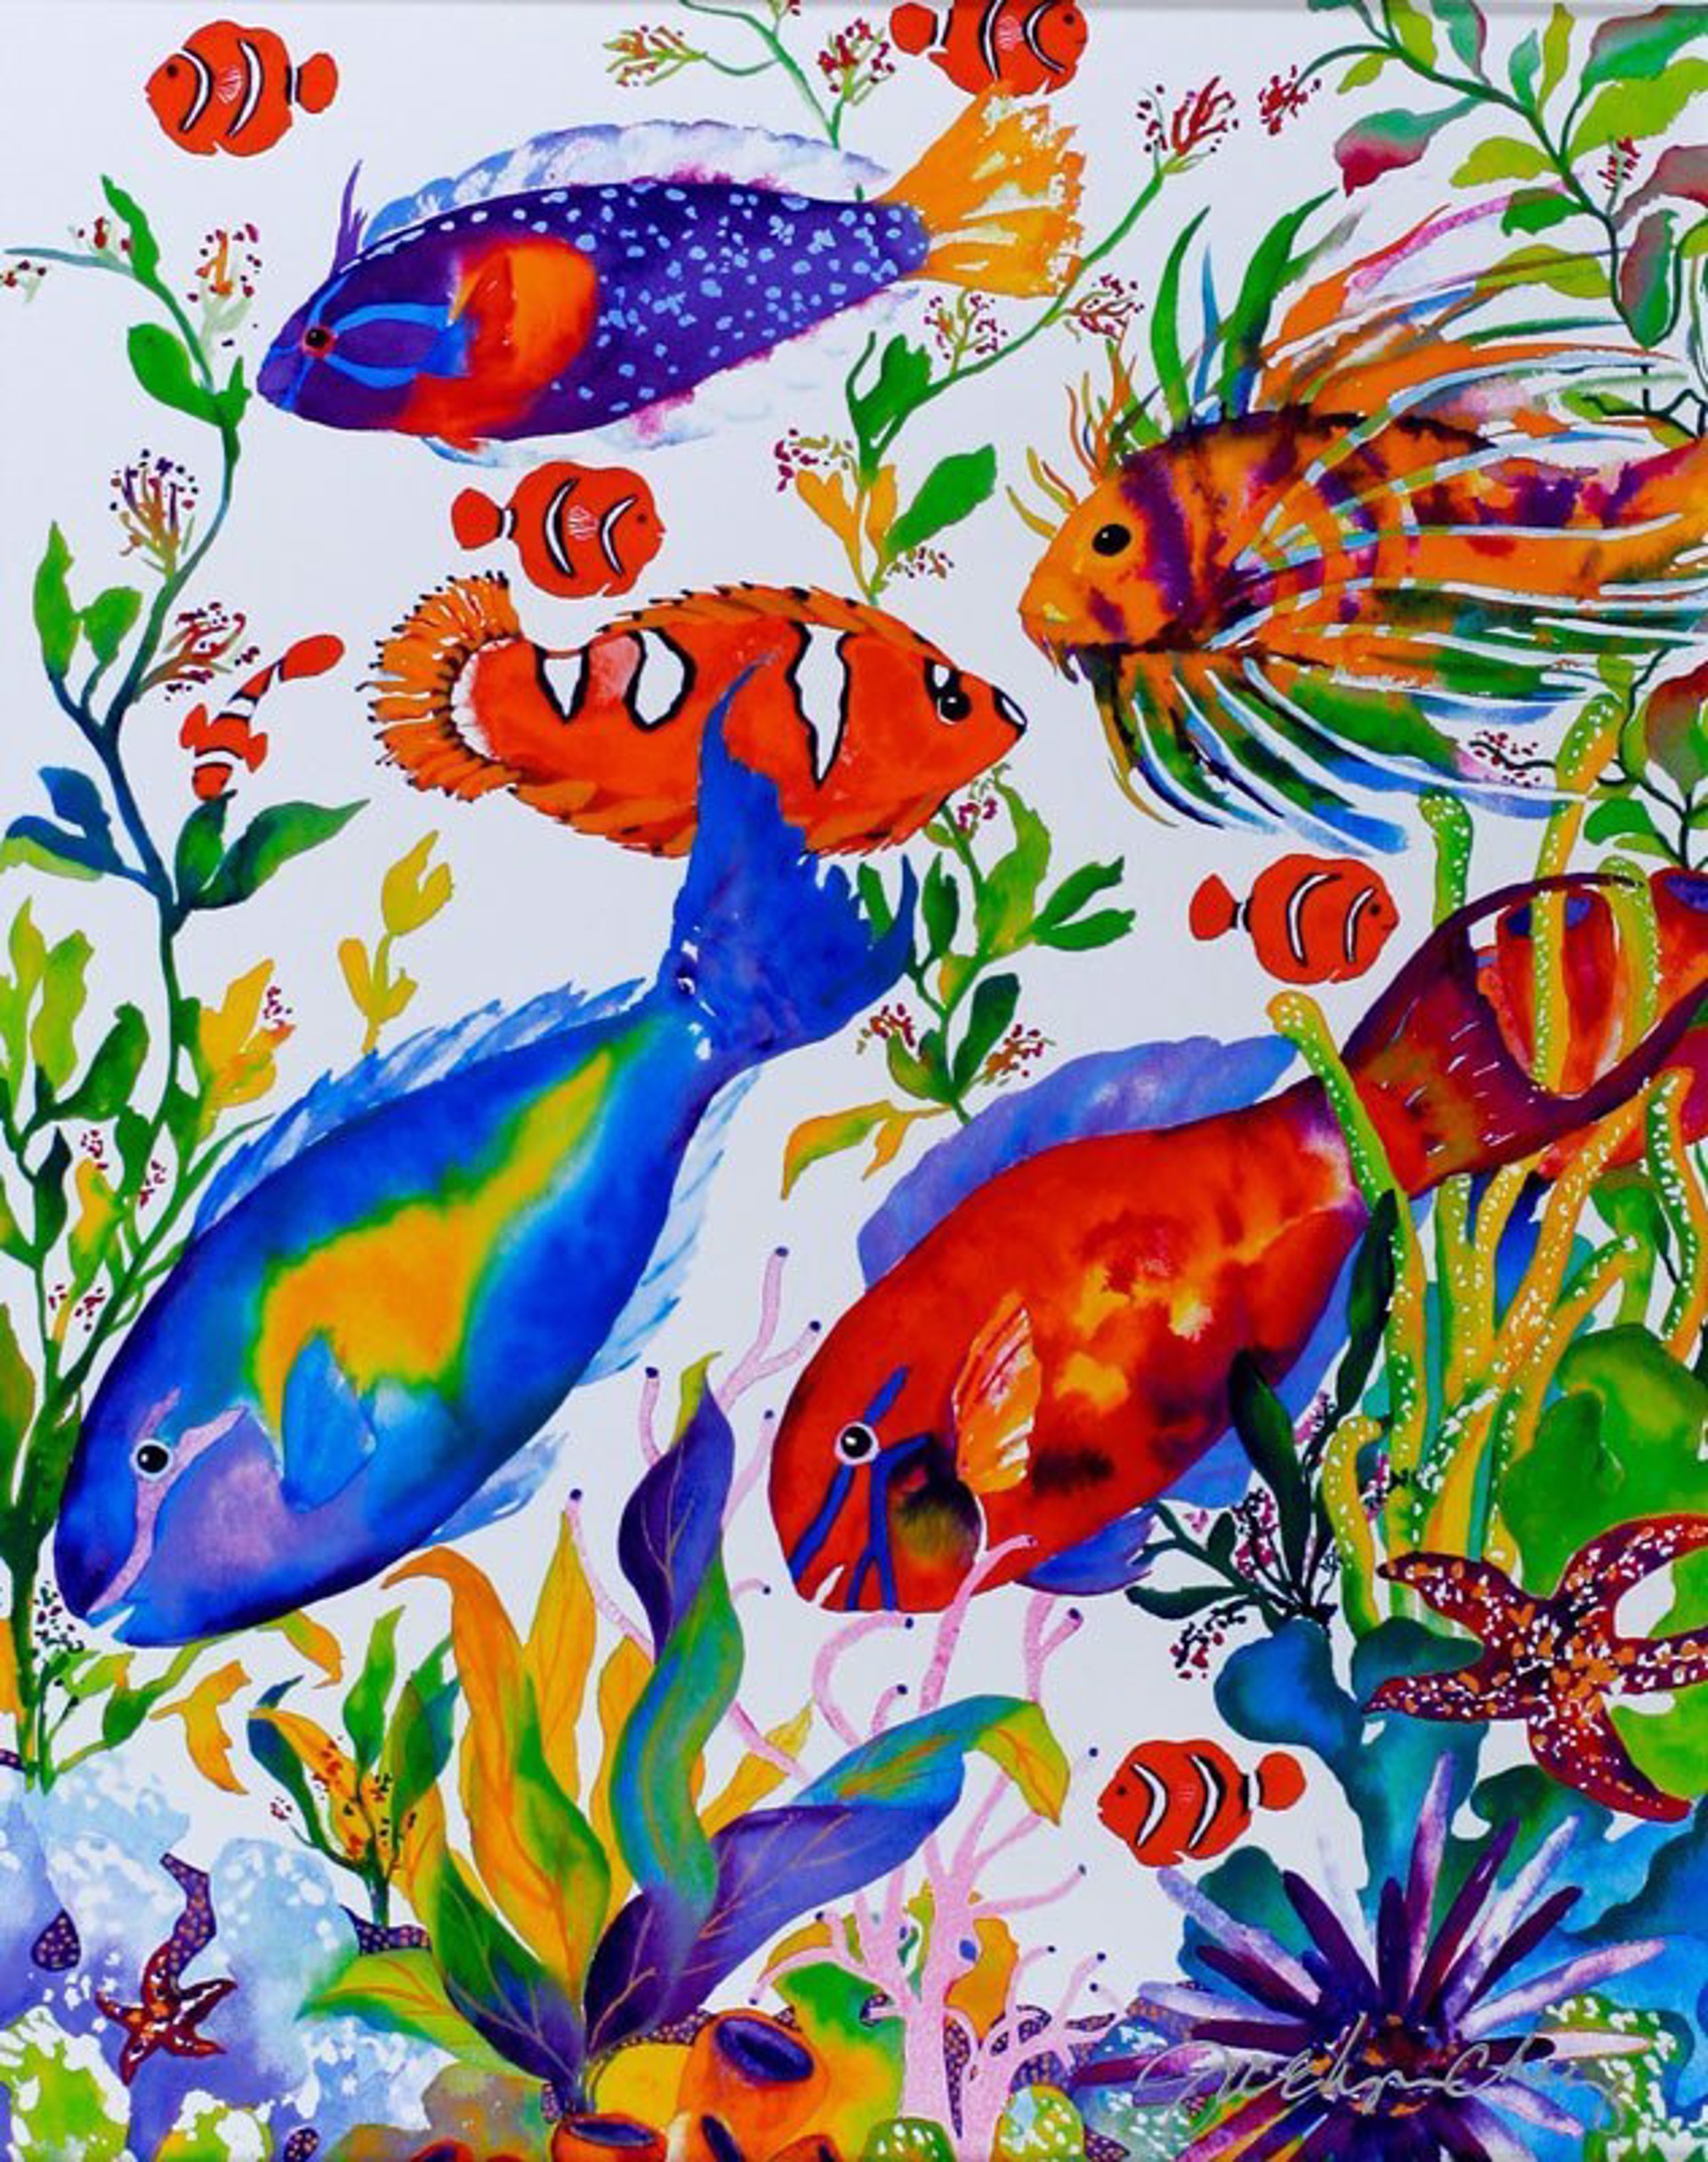 Hawaiian Reef Fish # 2 by Jocelyn Cheng